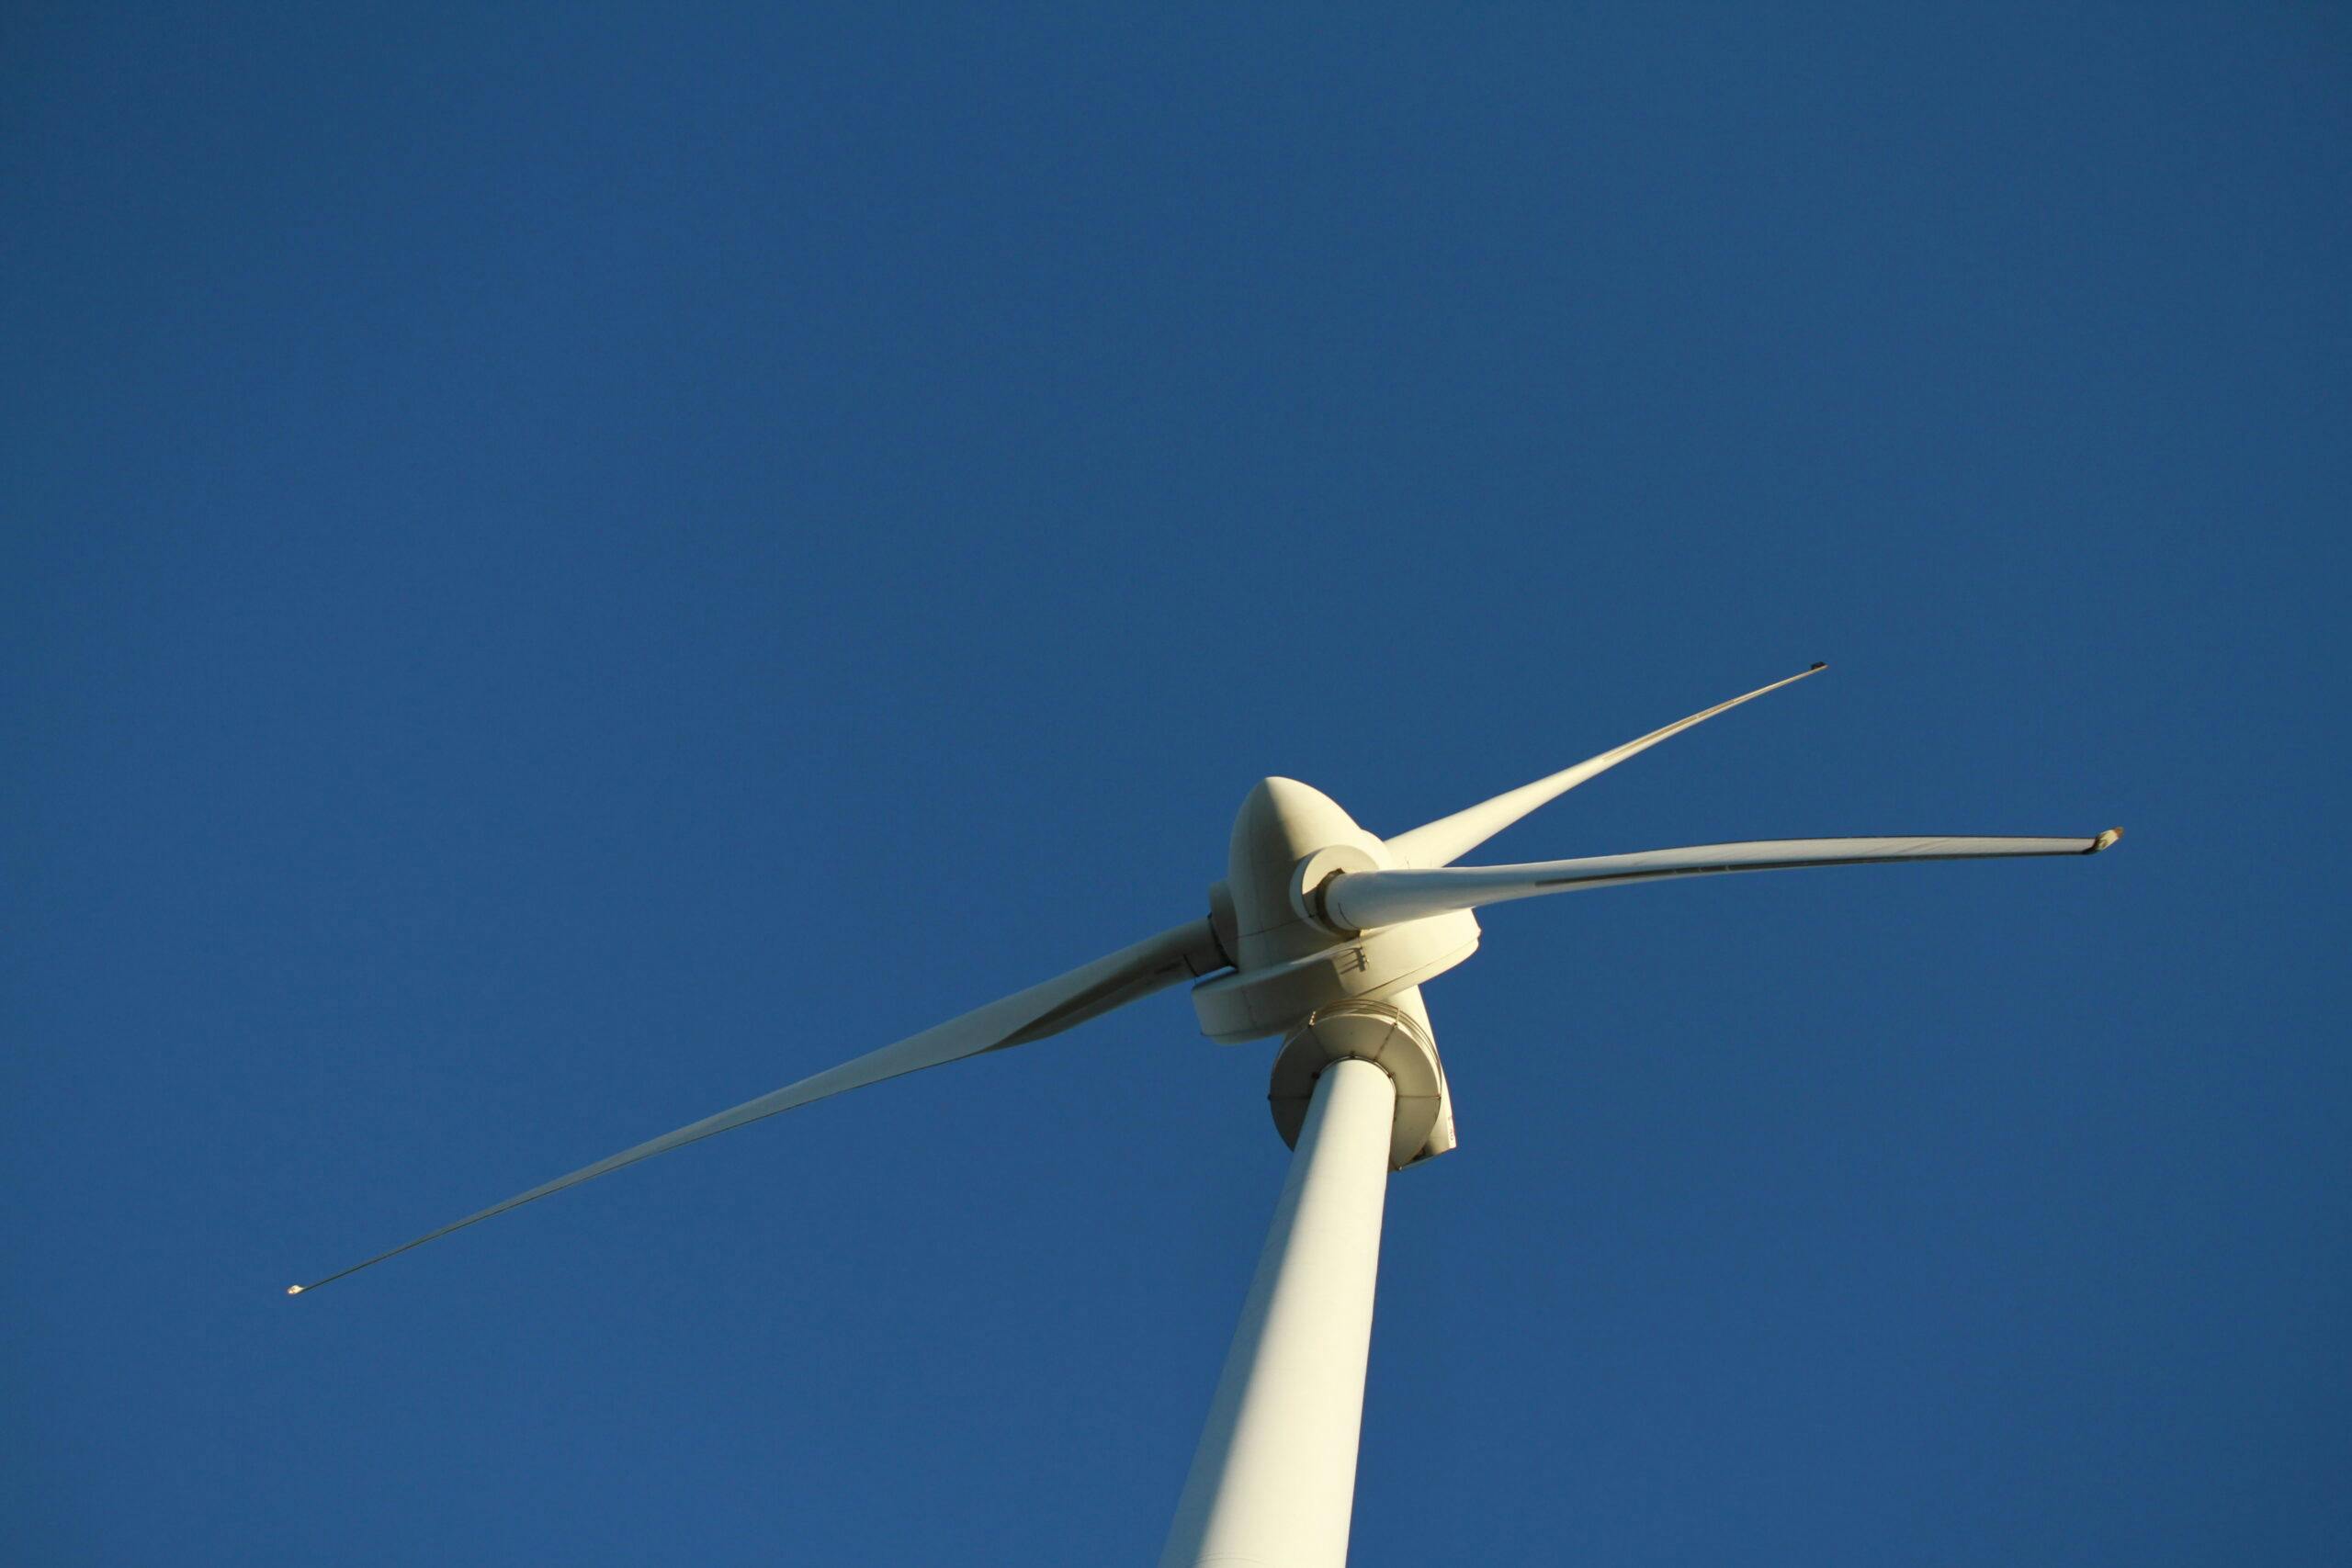 2017-12-04 i Simris i Skåne, foto av vindkraftverket som är en del av E.ON:s projekt med lokala energisamhällen